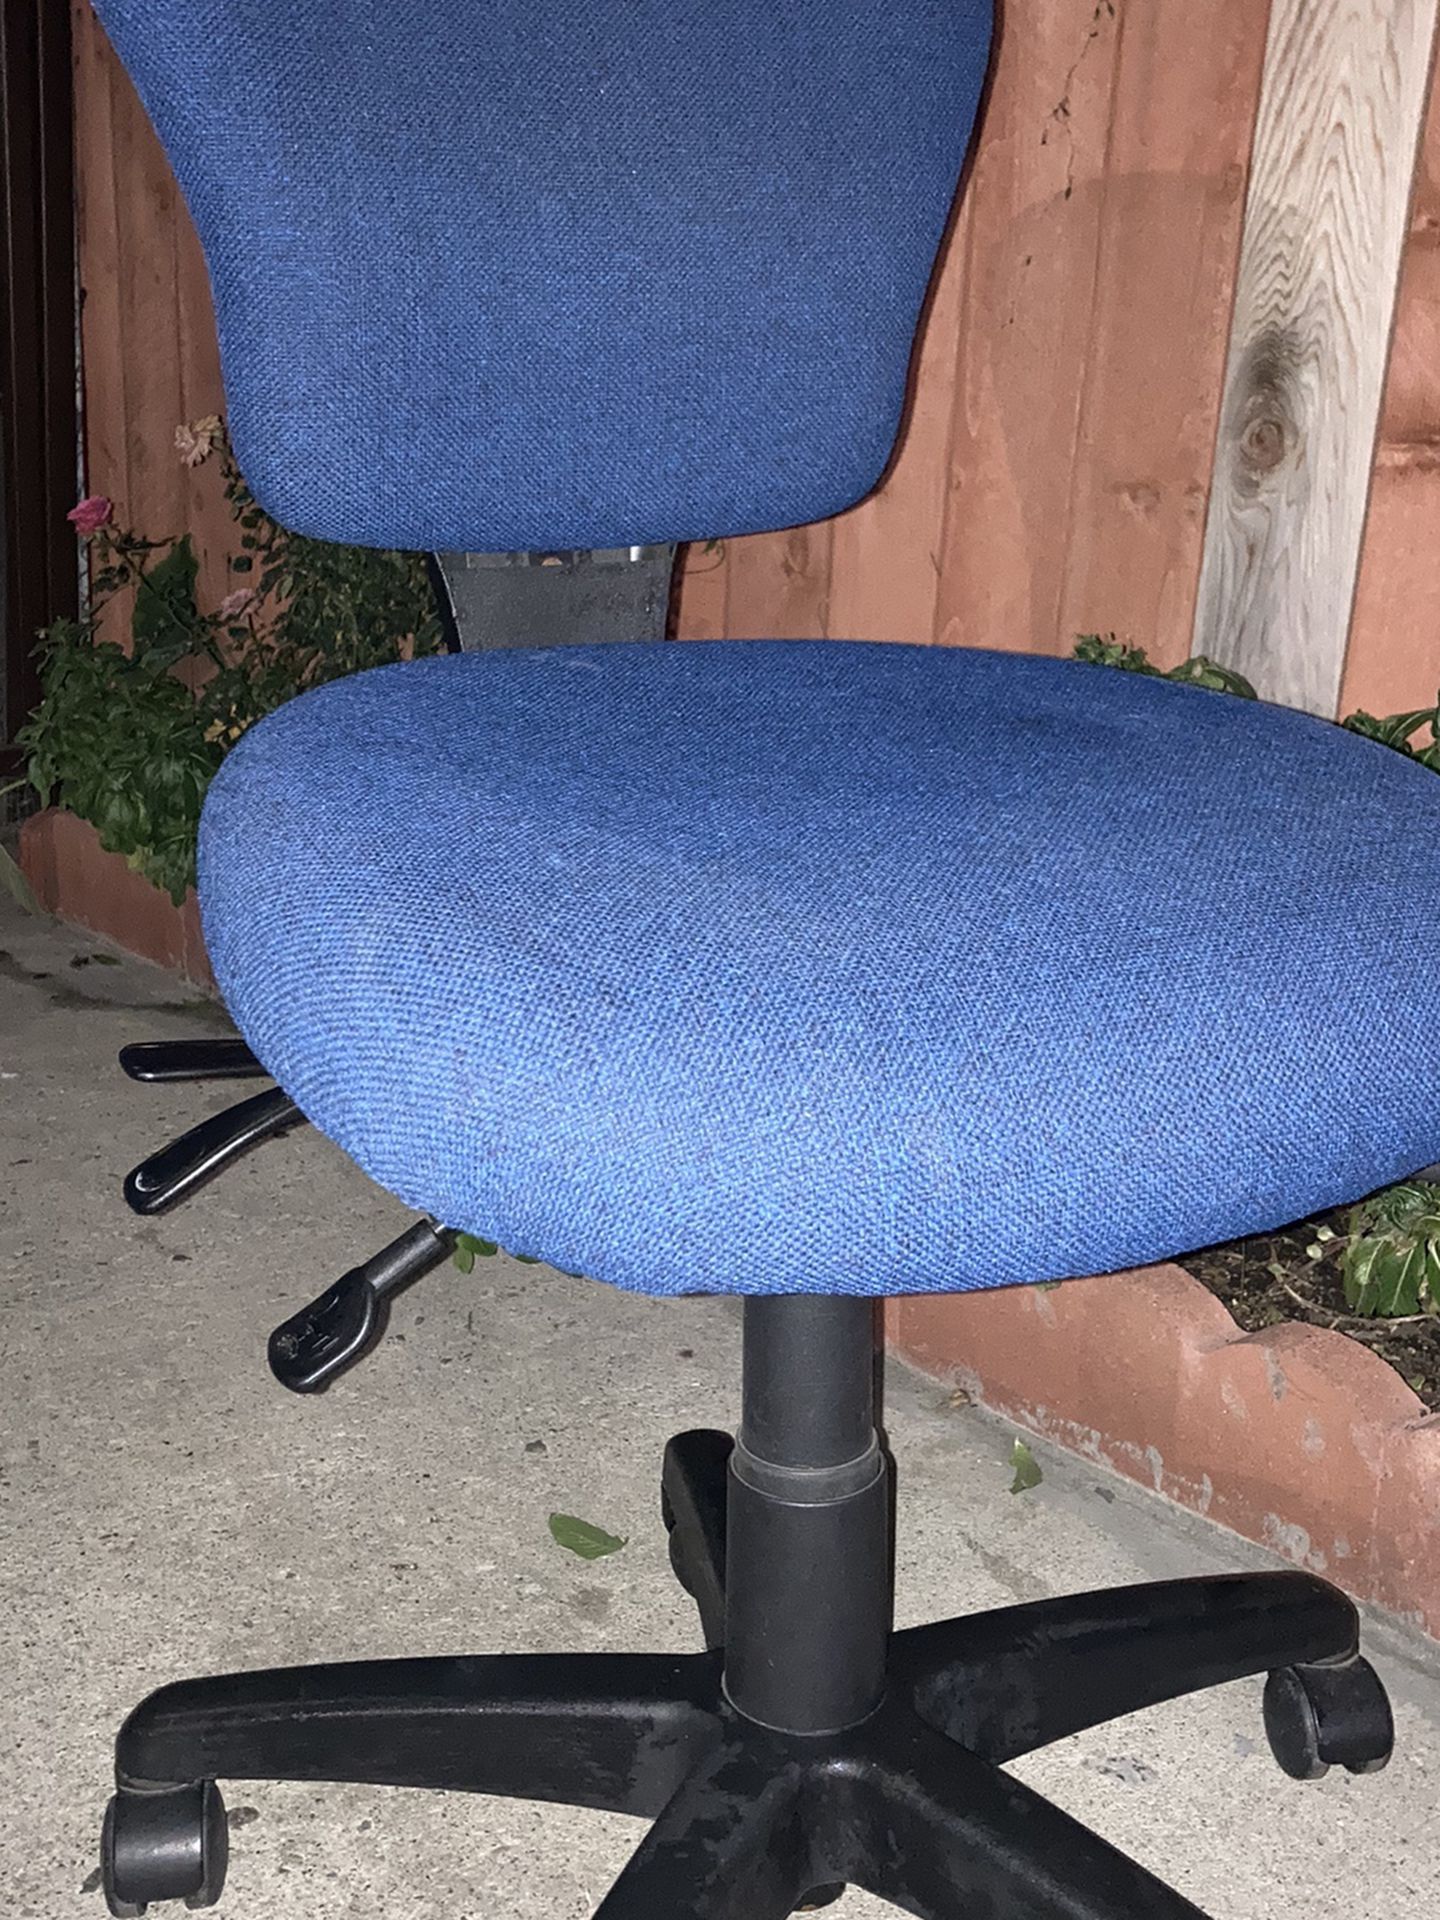 Blue Computer Chair